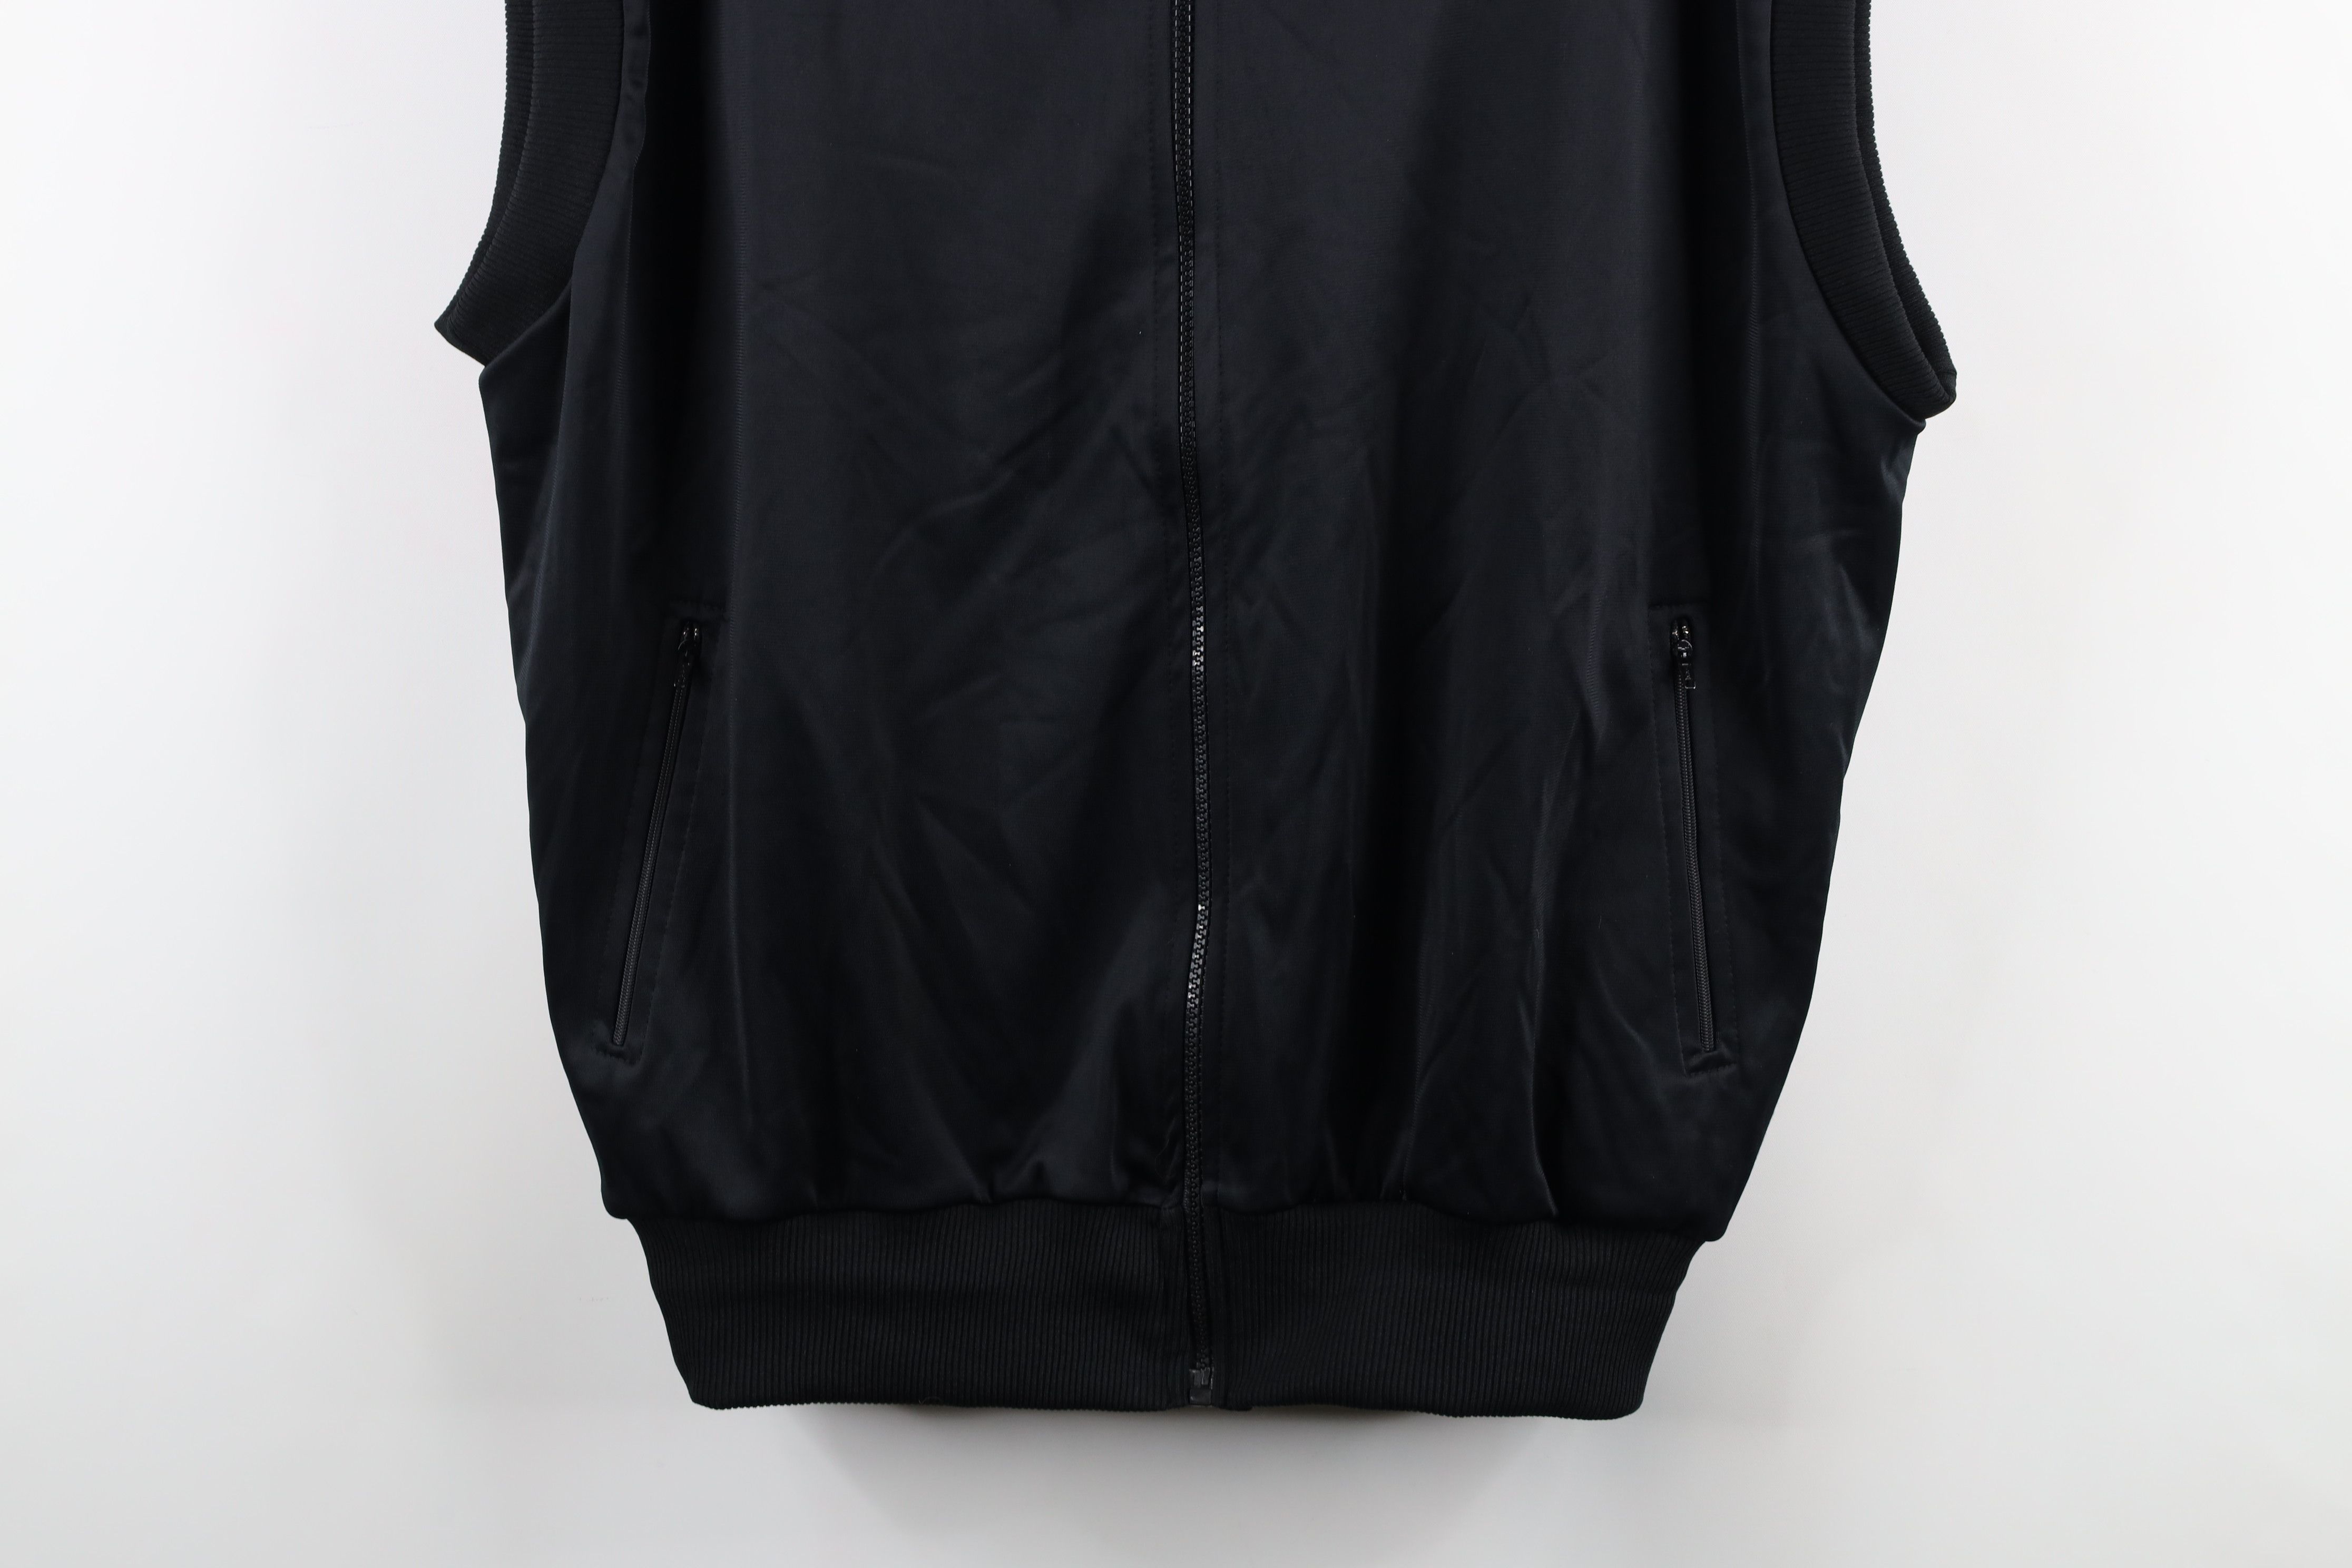 Vintage Vintage 80s Puma Full Zip Fleece Lined Vest Jacket Black Size US XL / EU 56 / 4 - 3 Thumbnail